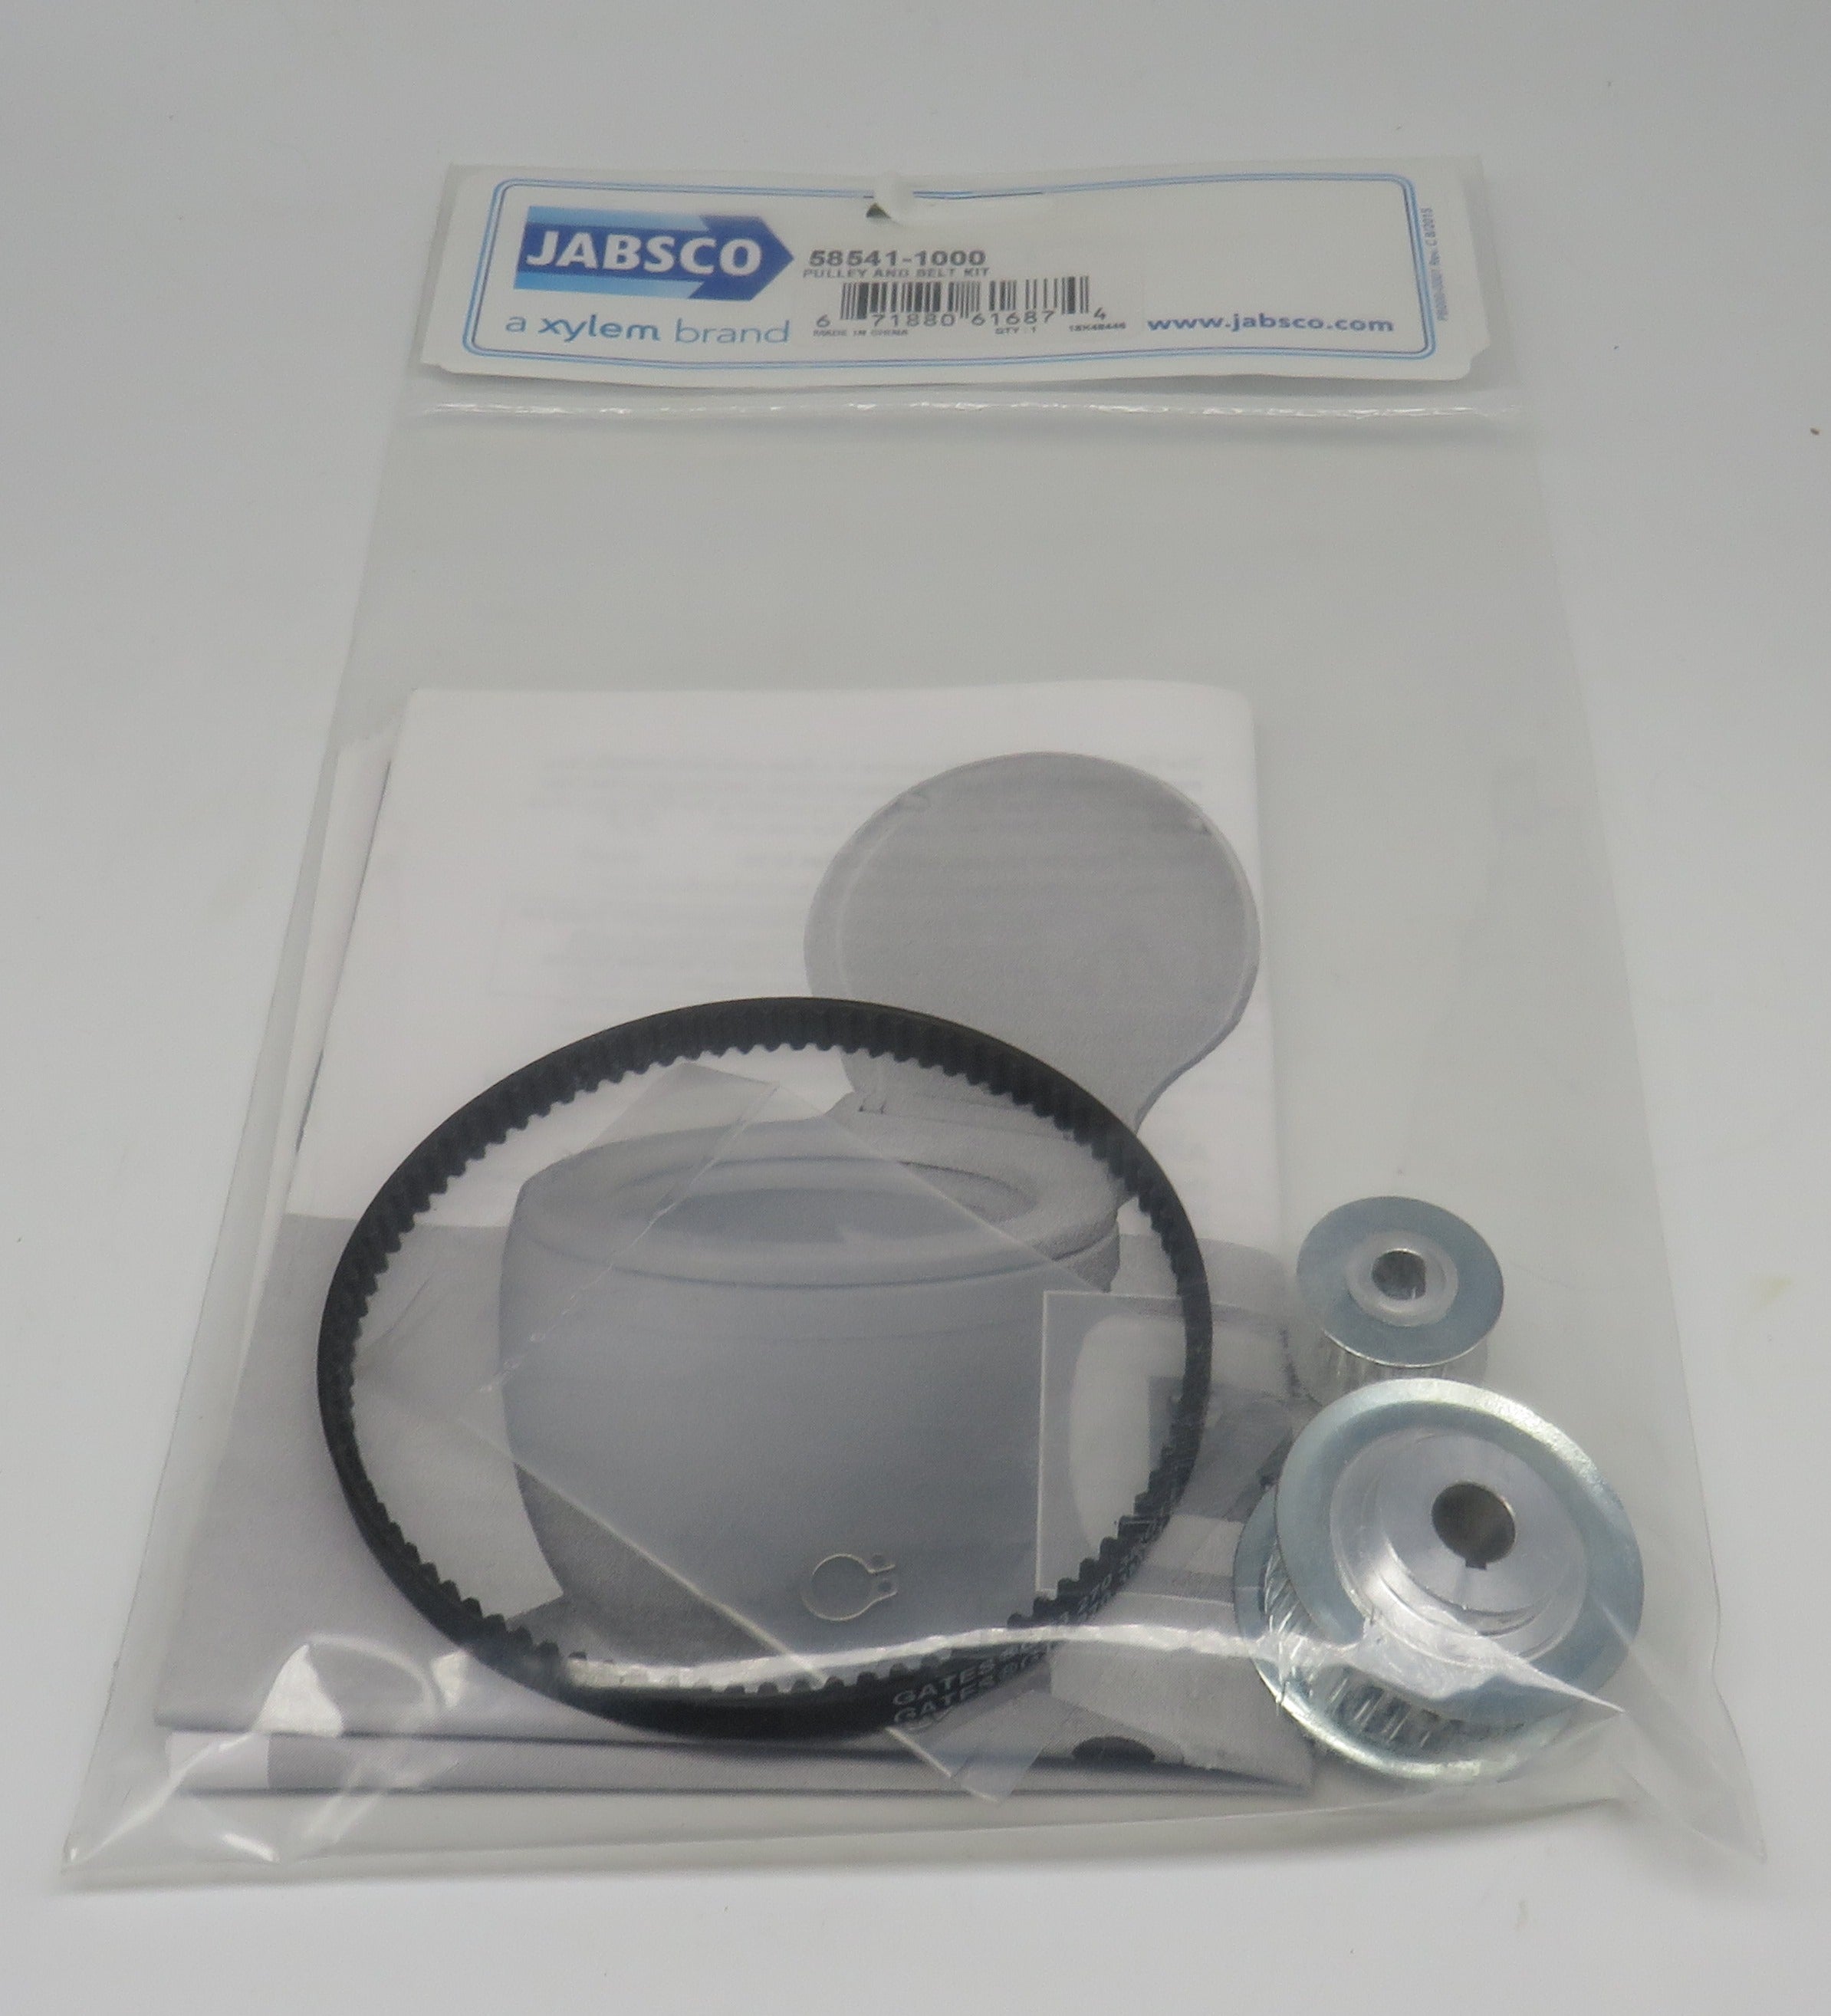 58541-1000 Jabsco Pulley & Belt Kit for Lite Flush Head